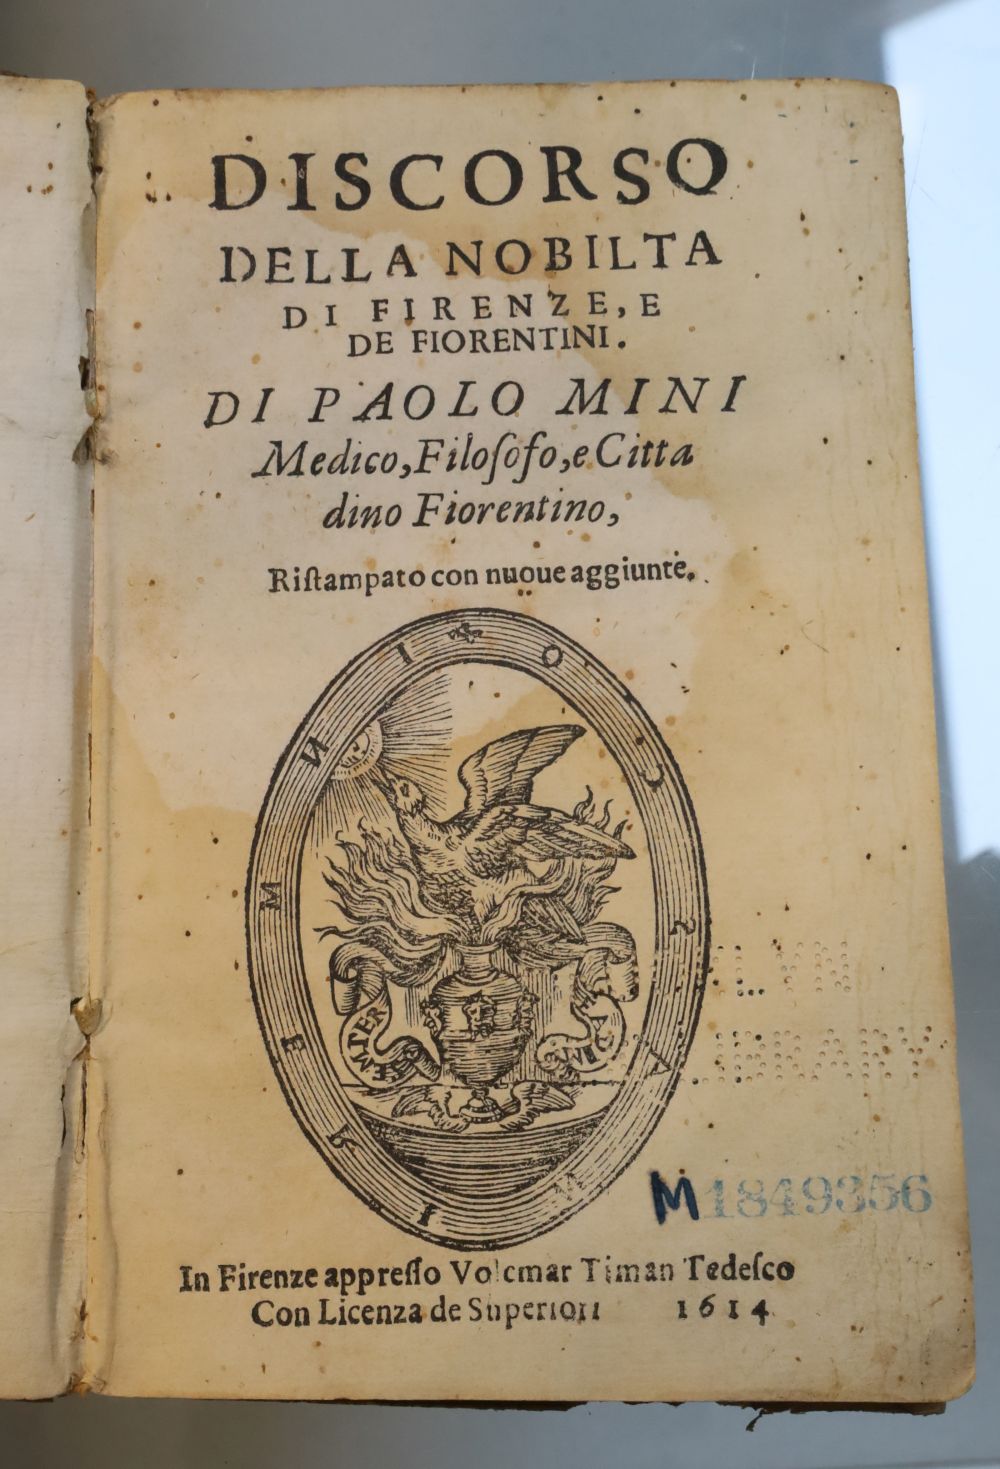 Mini, Paolo - Discorso della nobilta di Firenze, vellum, 12mo, library stamp, bookplate and piercing to title page,